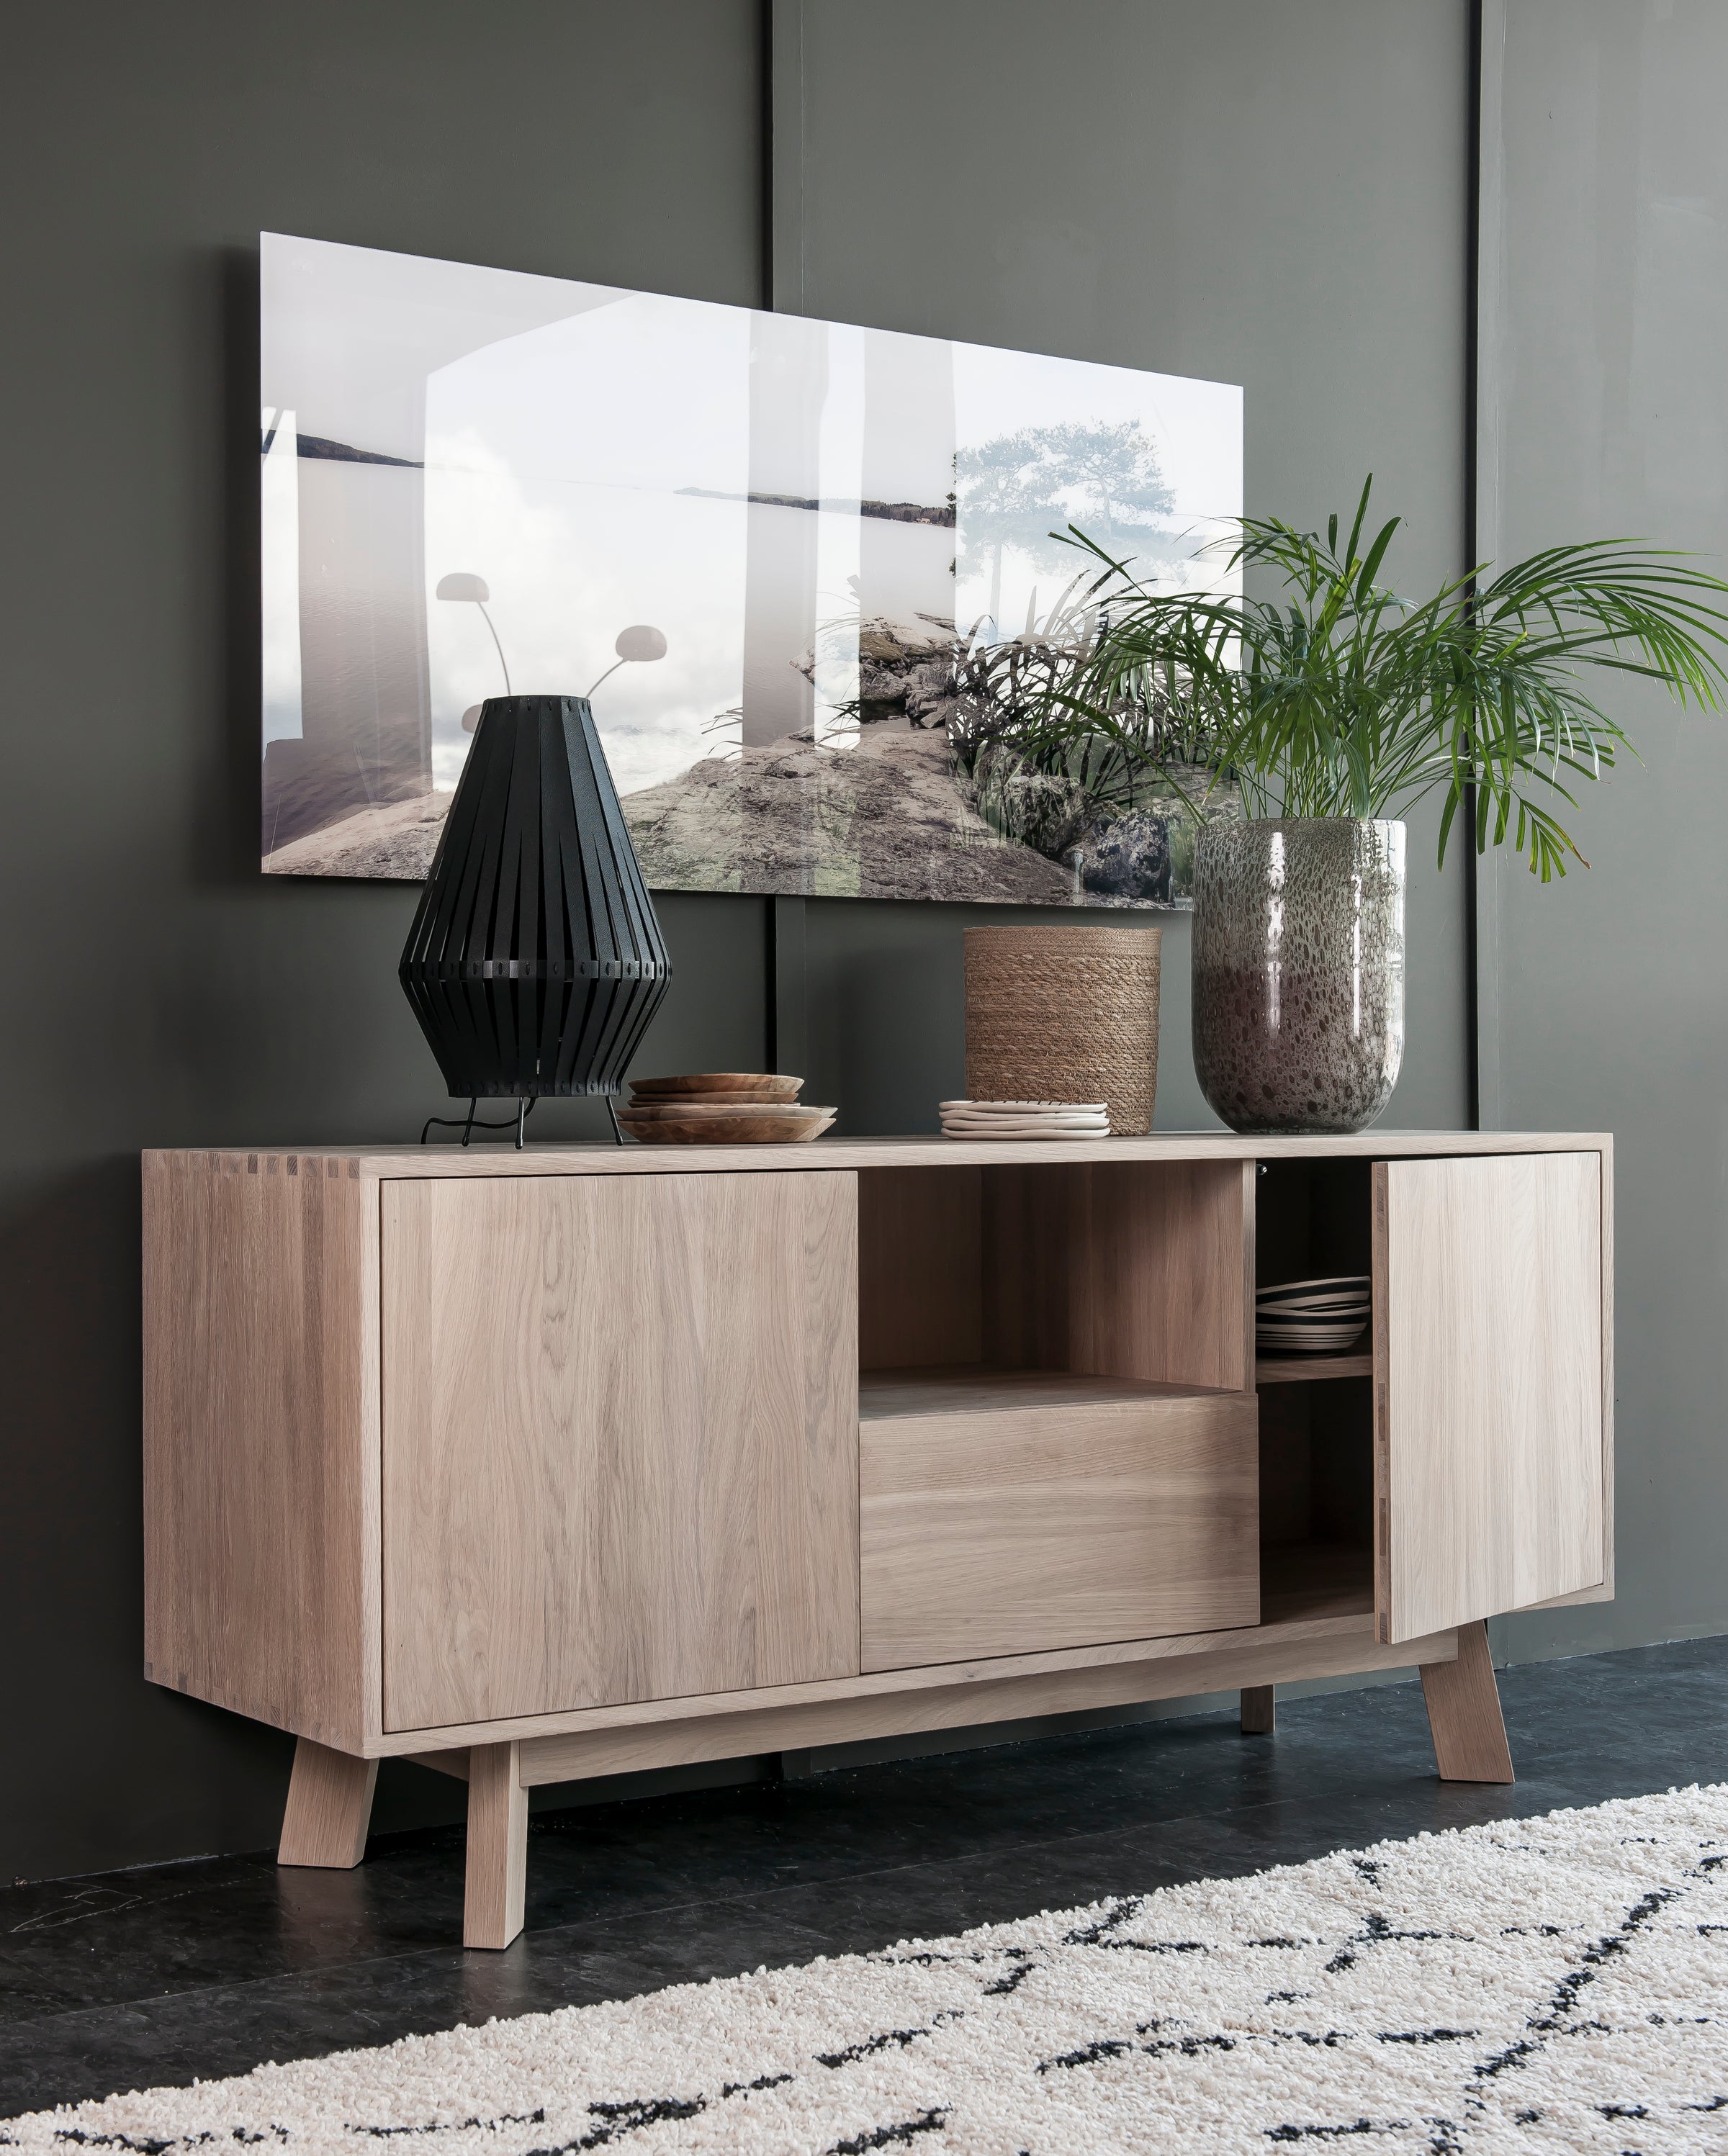 Milola Furniture Outlet | Save on Designer Furniture – Milola.ch